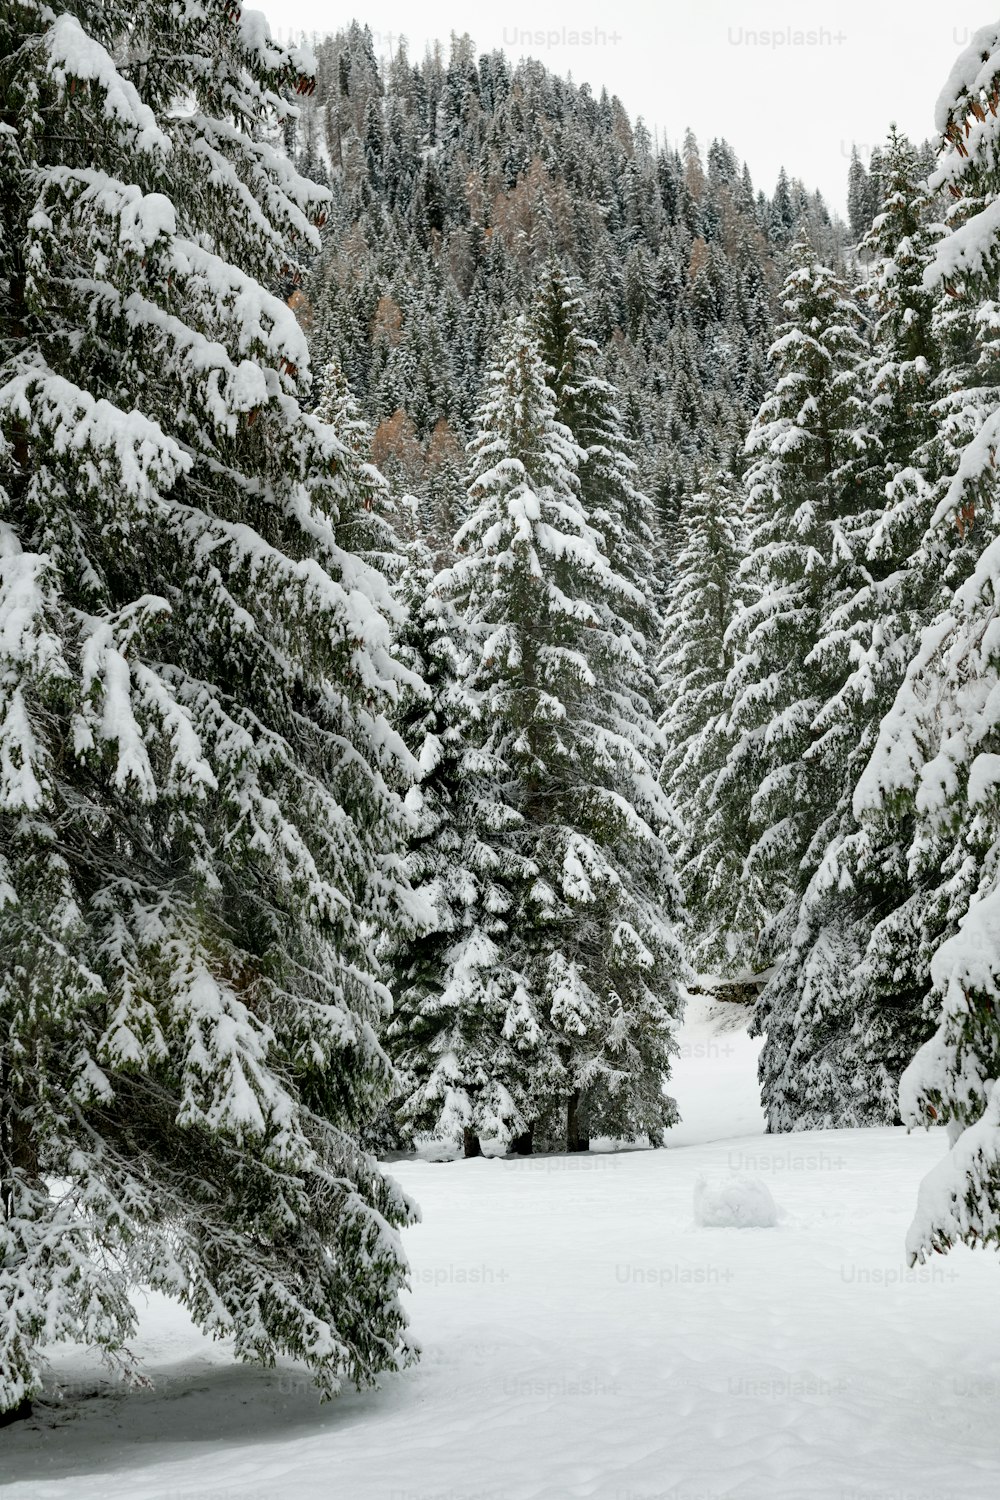 Una persona en esquís en medio de un bosque nevado